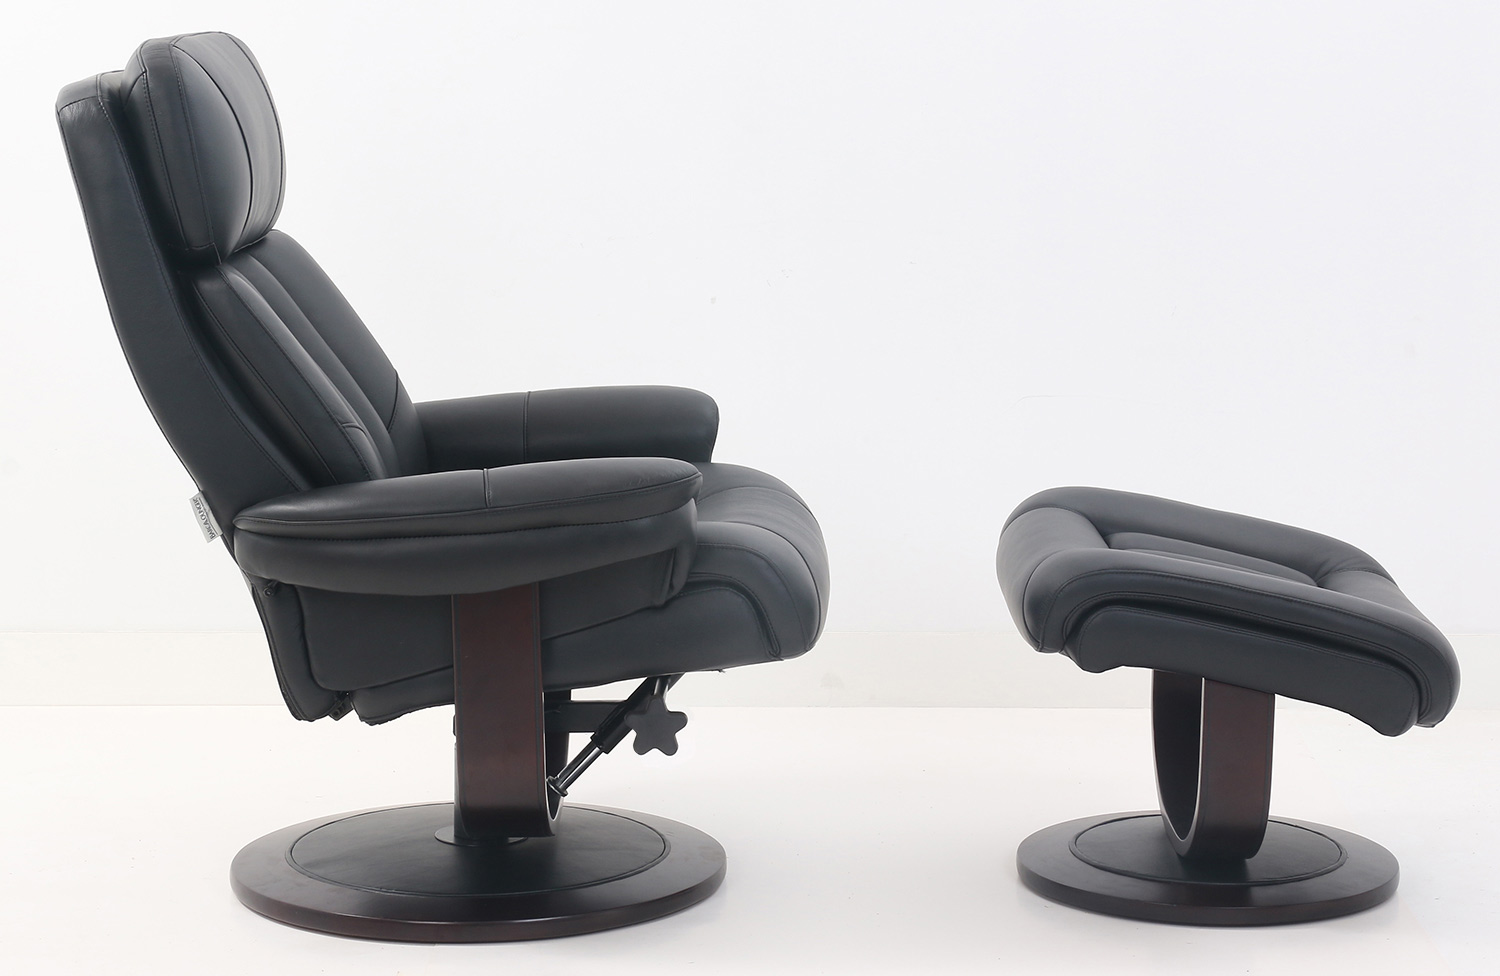 Barcalounger Oakleigh Pedestal Recliner Chair and Ottoman - Hilton Black/Leather match